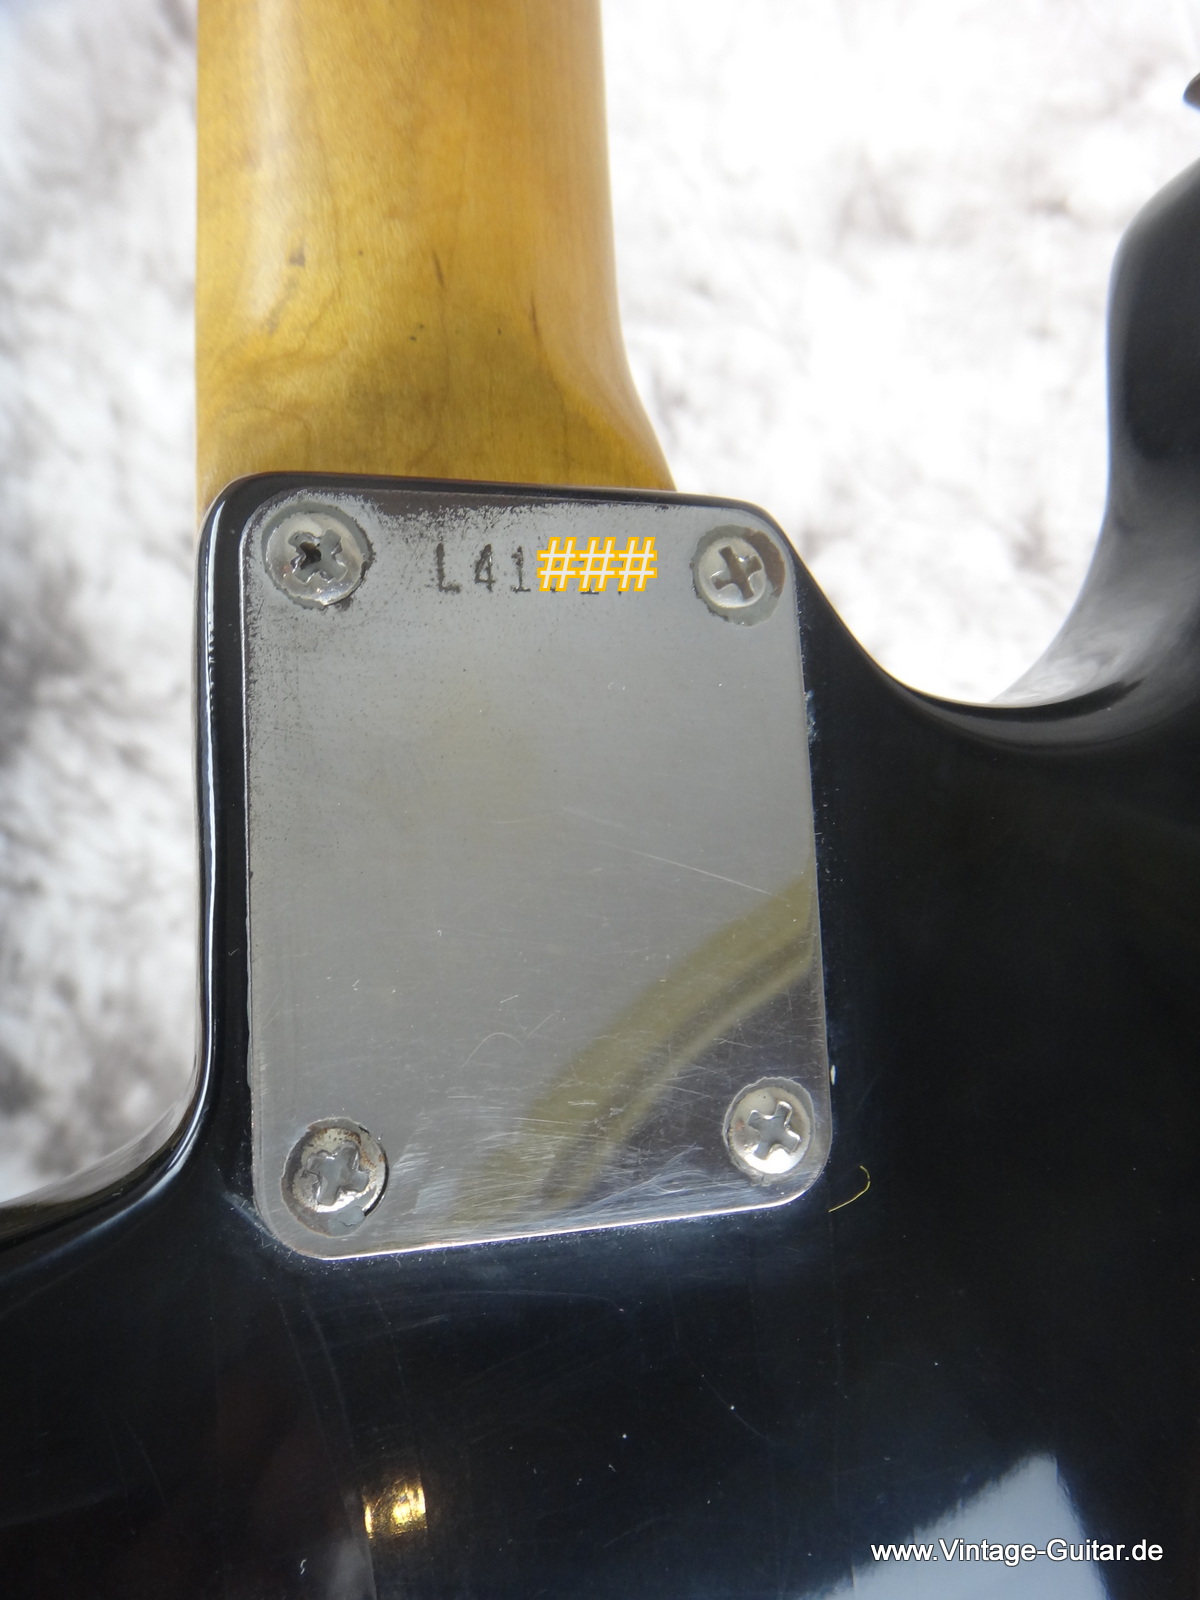 Fender_Stratocaster-black_refinish-1964-006.JPG